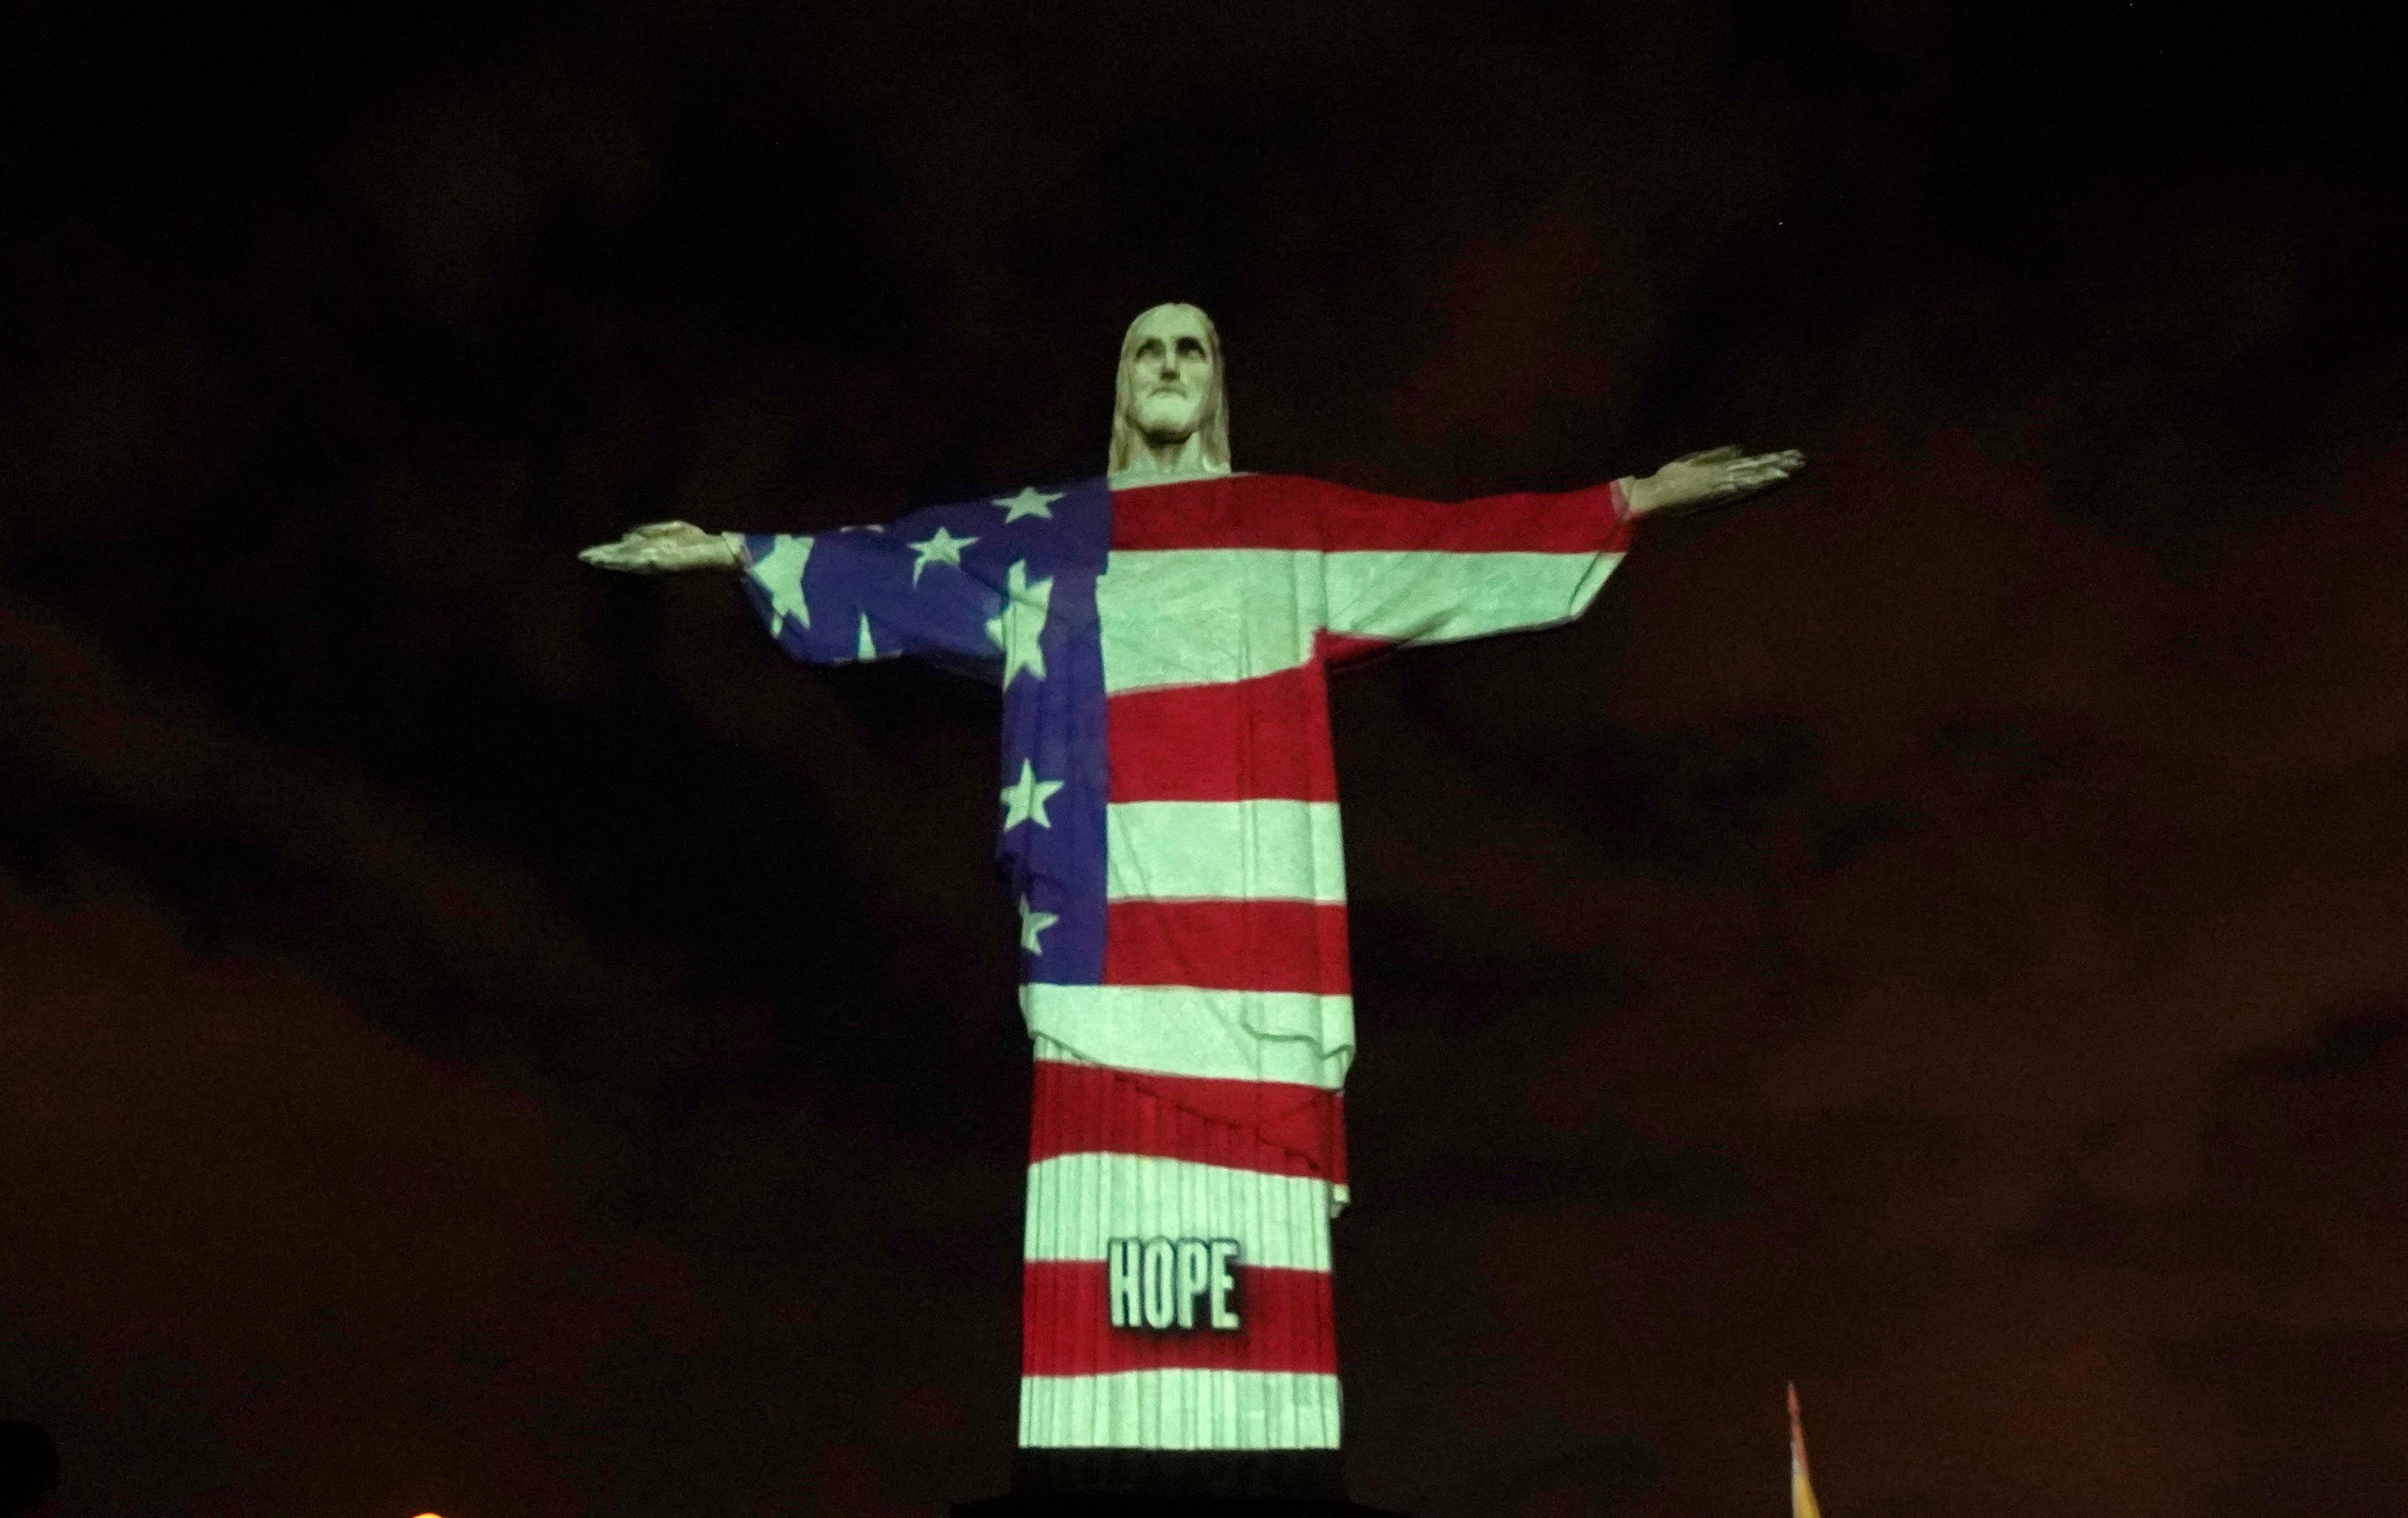 Το άγαλμα του Ιησού στο Ρίο στα χρώματα της σημαίας των ΗΠΑ